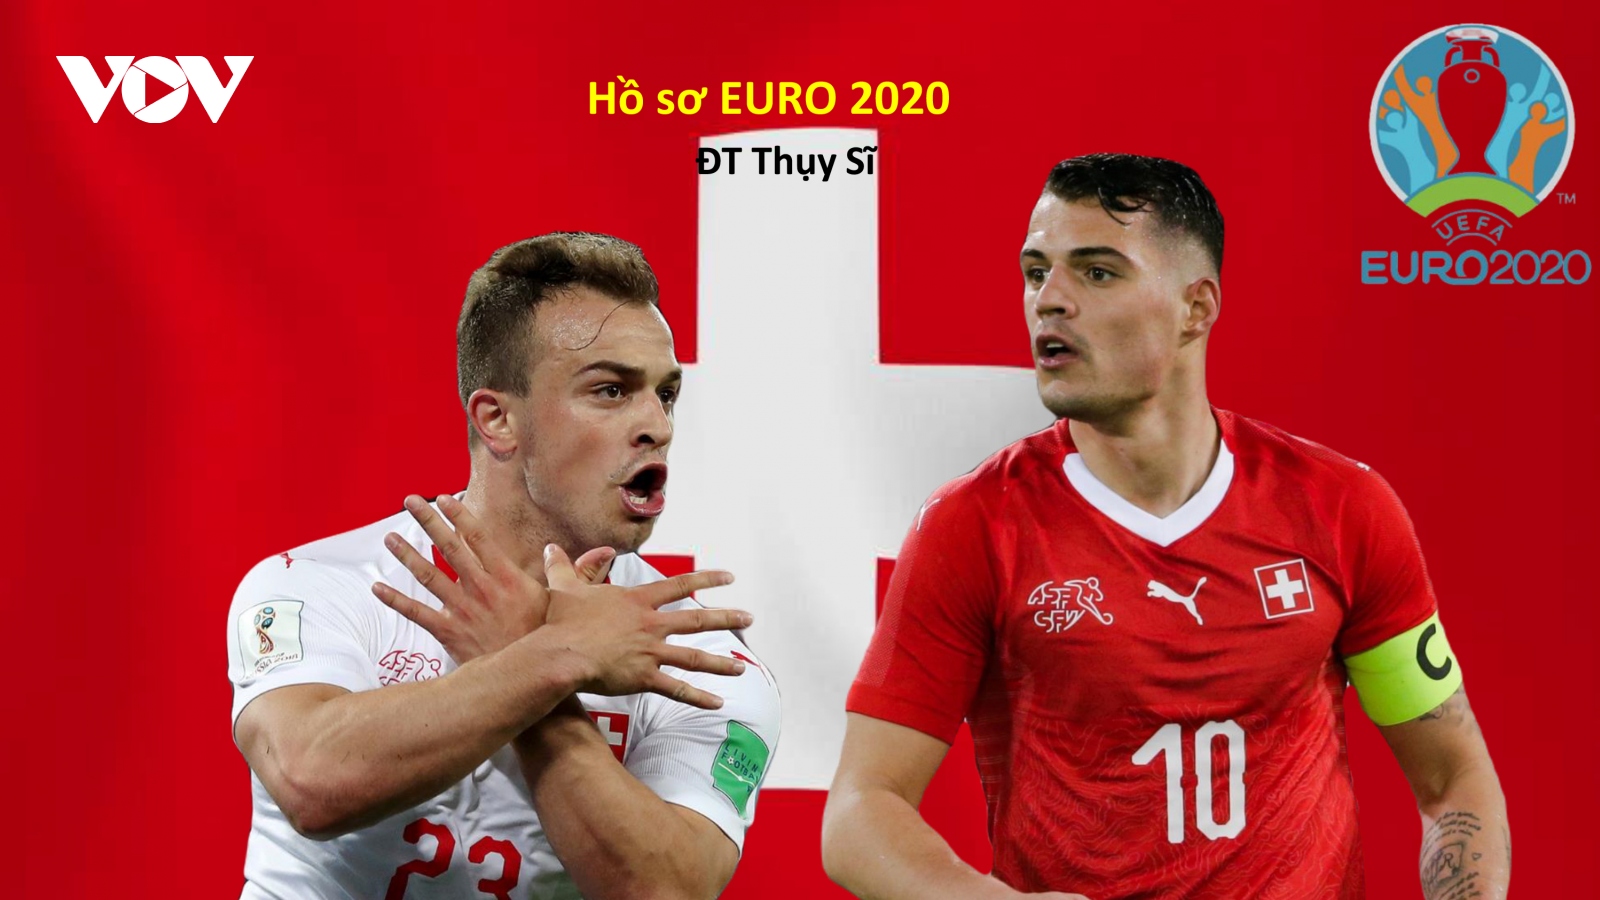 Hồ sơ các ĐT dự EURO 2020: Đội tuyển Thụy Sĩ